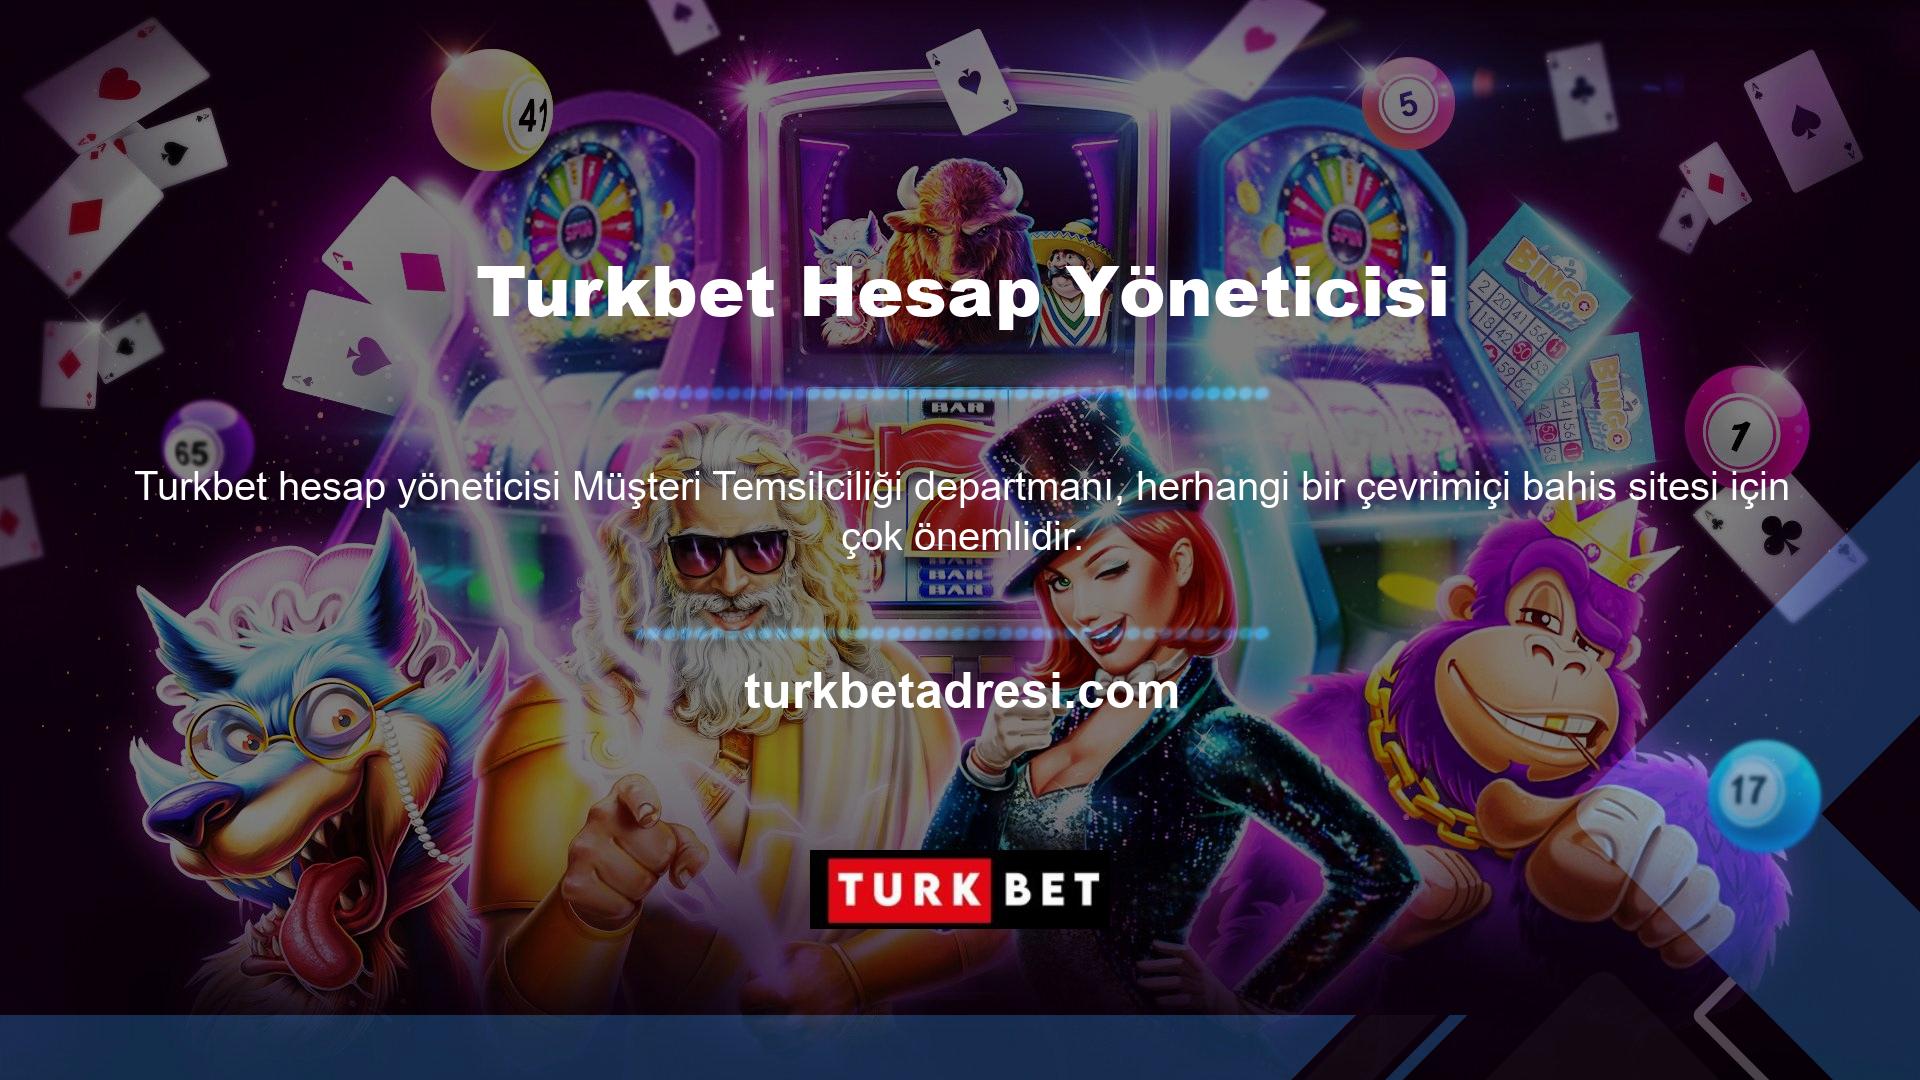 Turkbet, gerçek zamanlı destek ağımız aracılığıyla sürekli iletişim sağlar